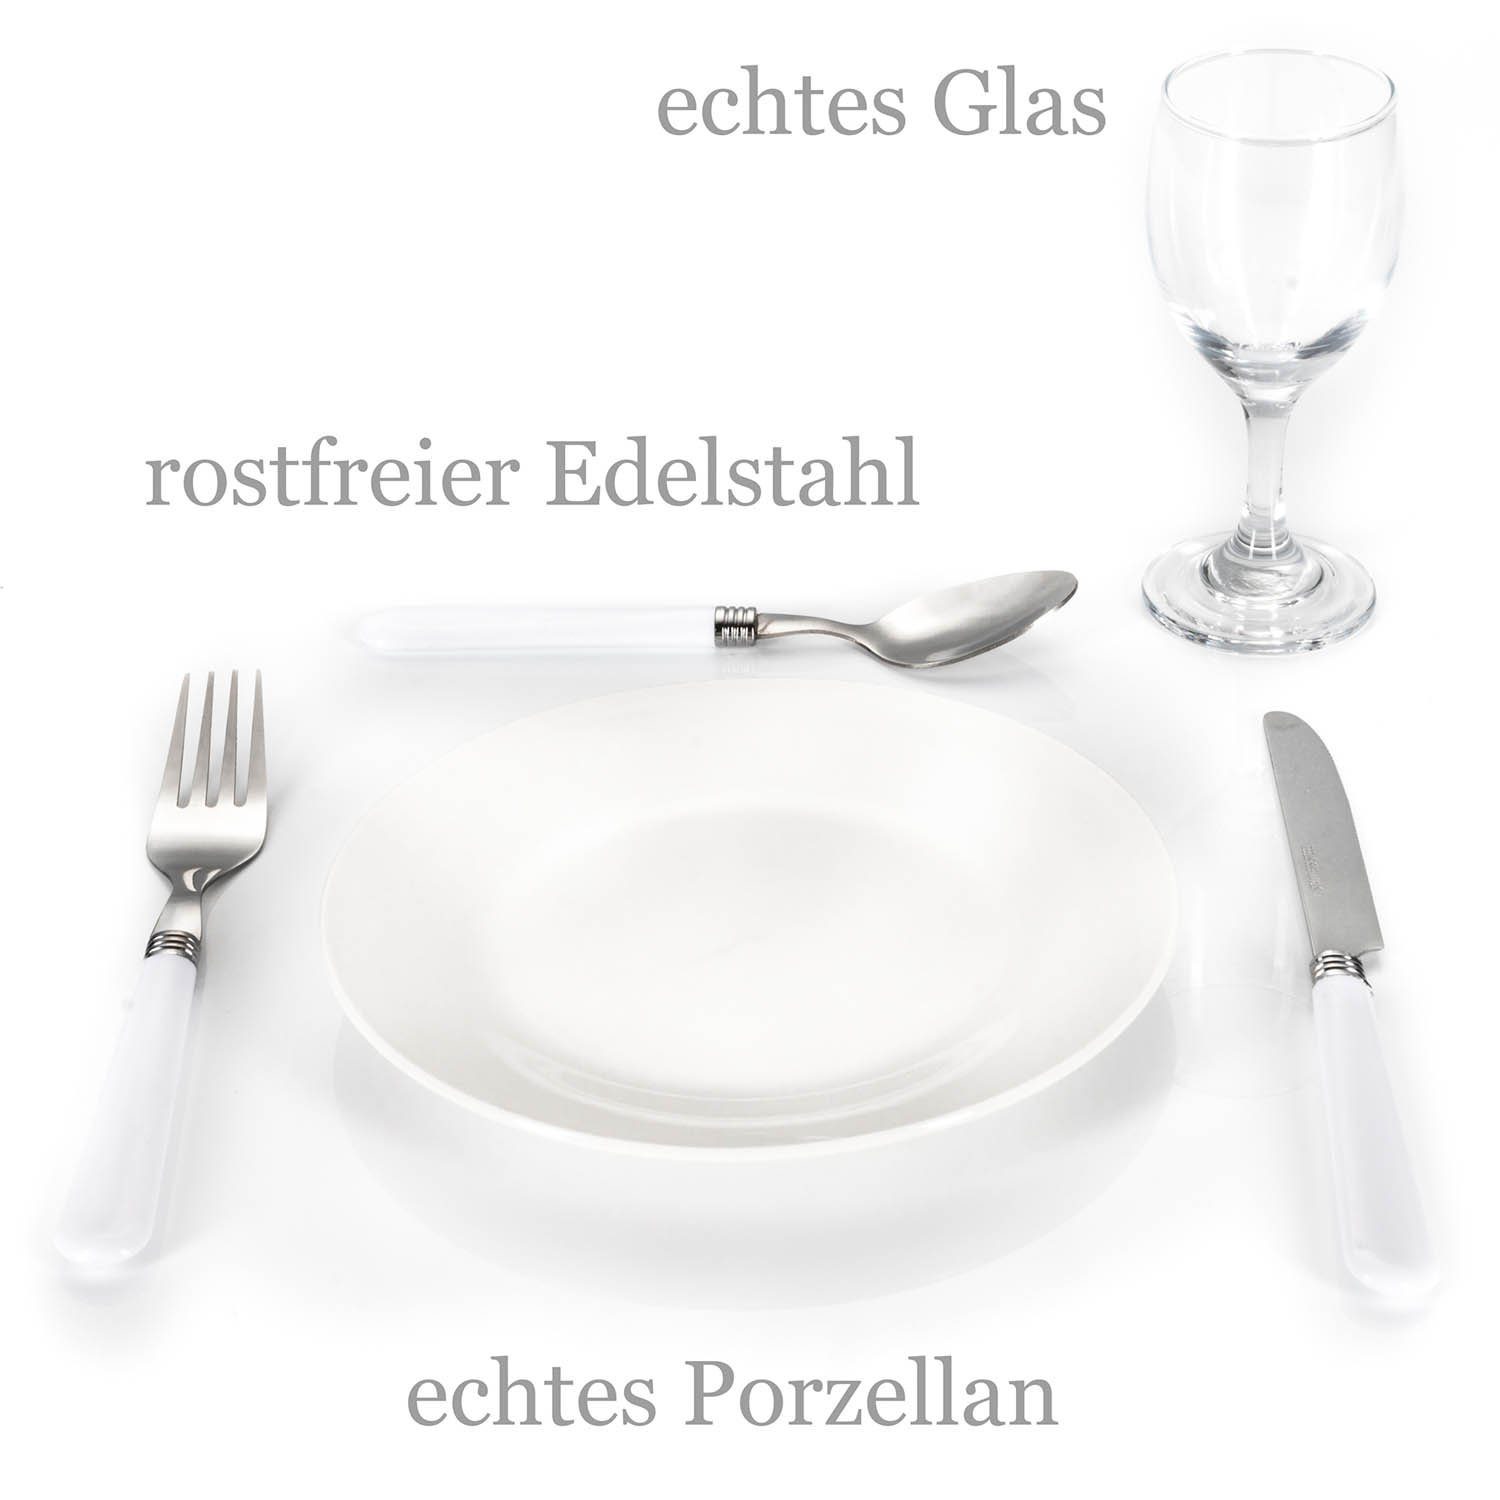 Gläsern, Korkenzieher), 2 Weidenkorb Personen für Geschirr, Besteck, Picknickkorb (Picknick Goods+Gadgets